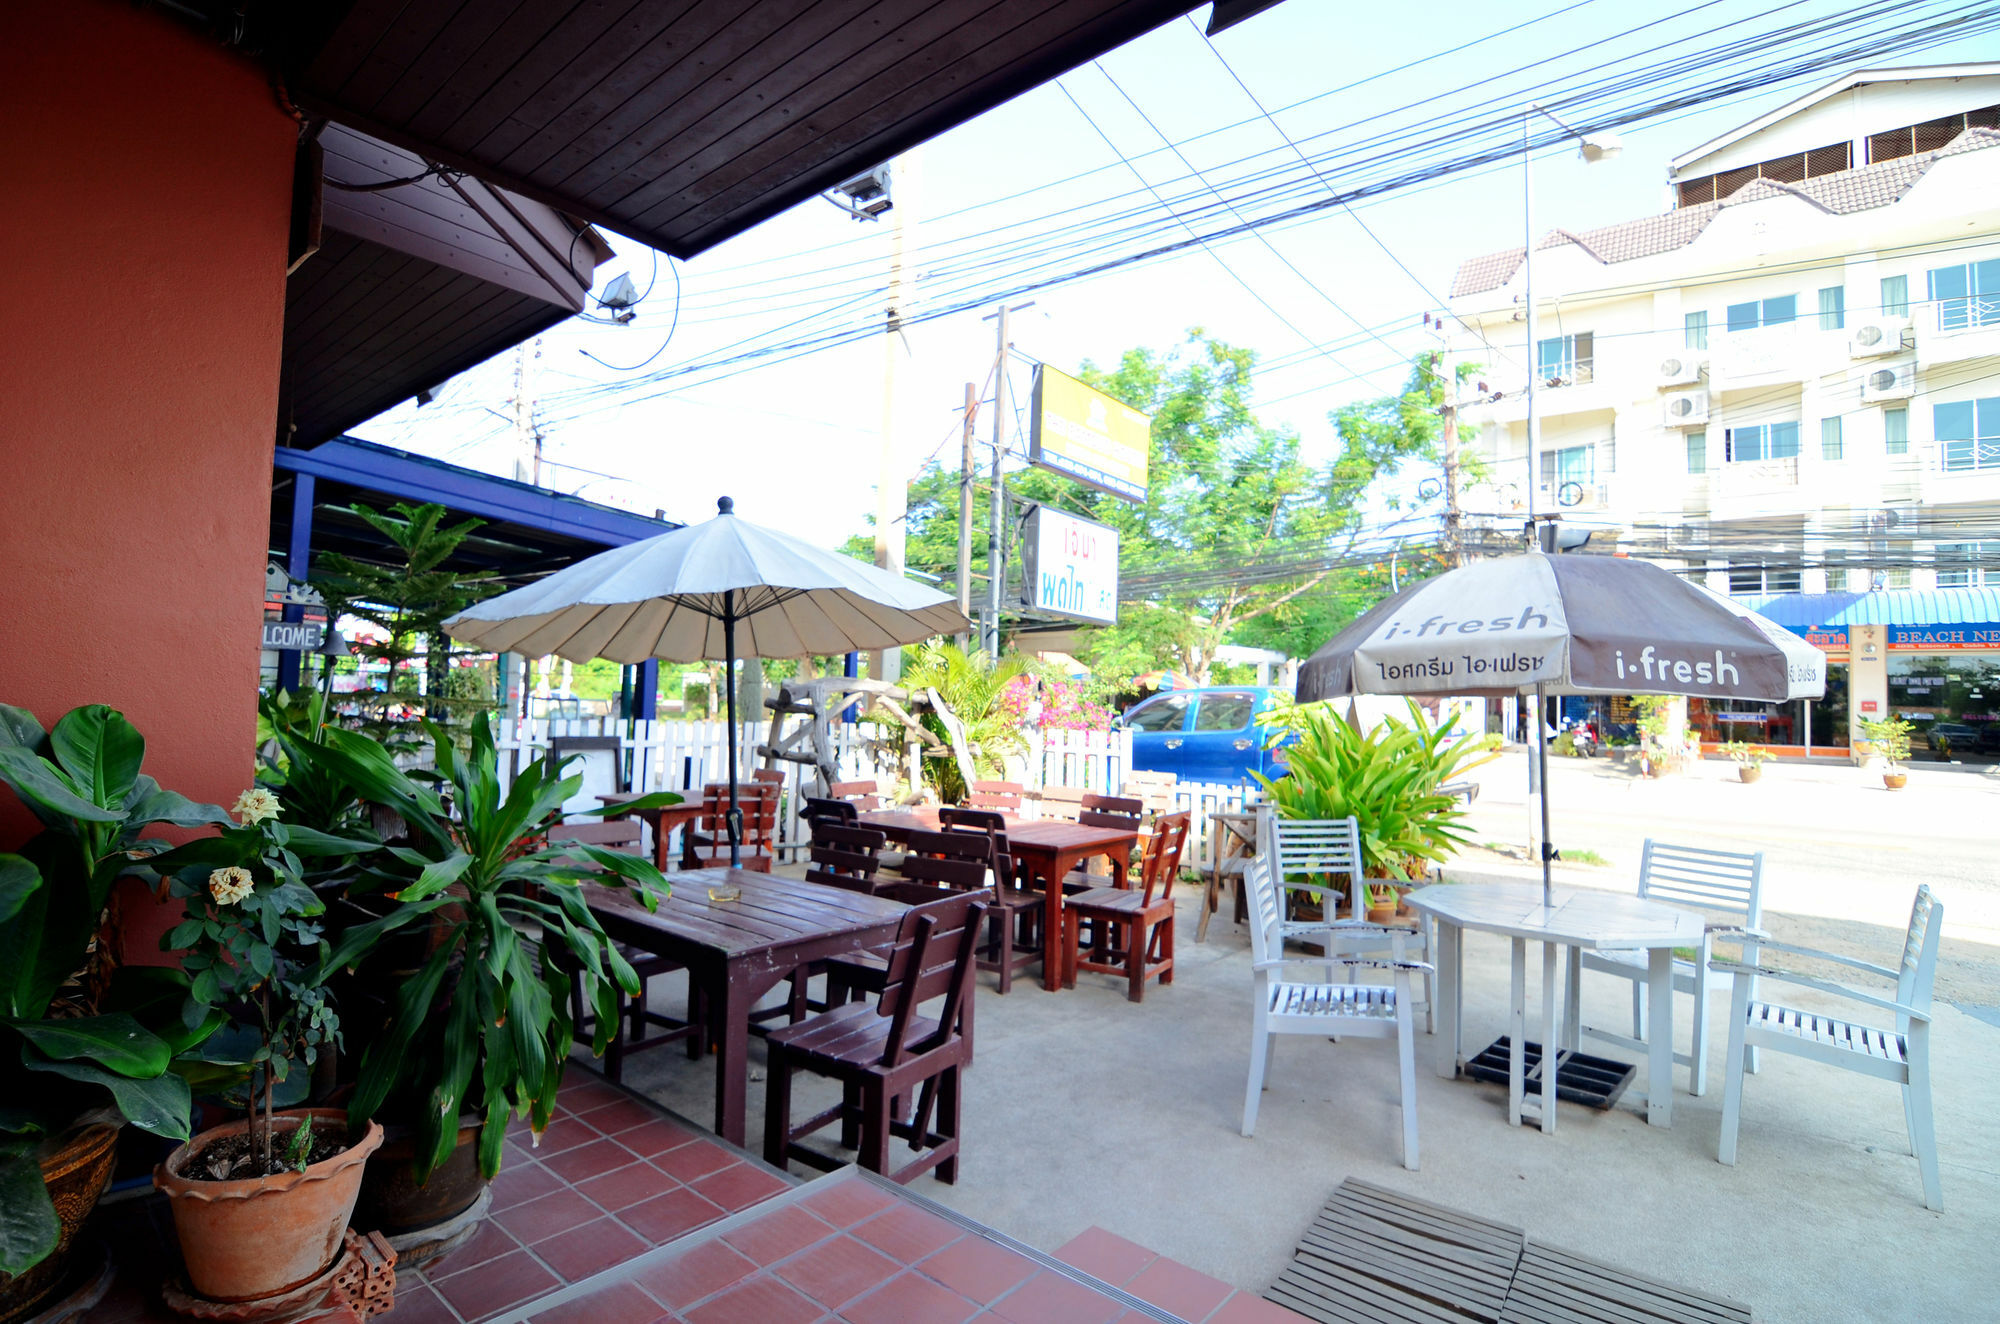 Hôtel The Famous House - Jomtien à Pattaya Extérieur photo